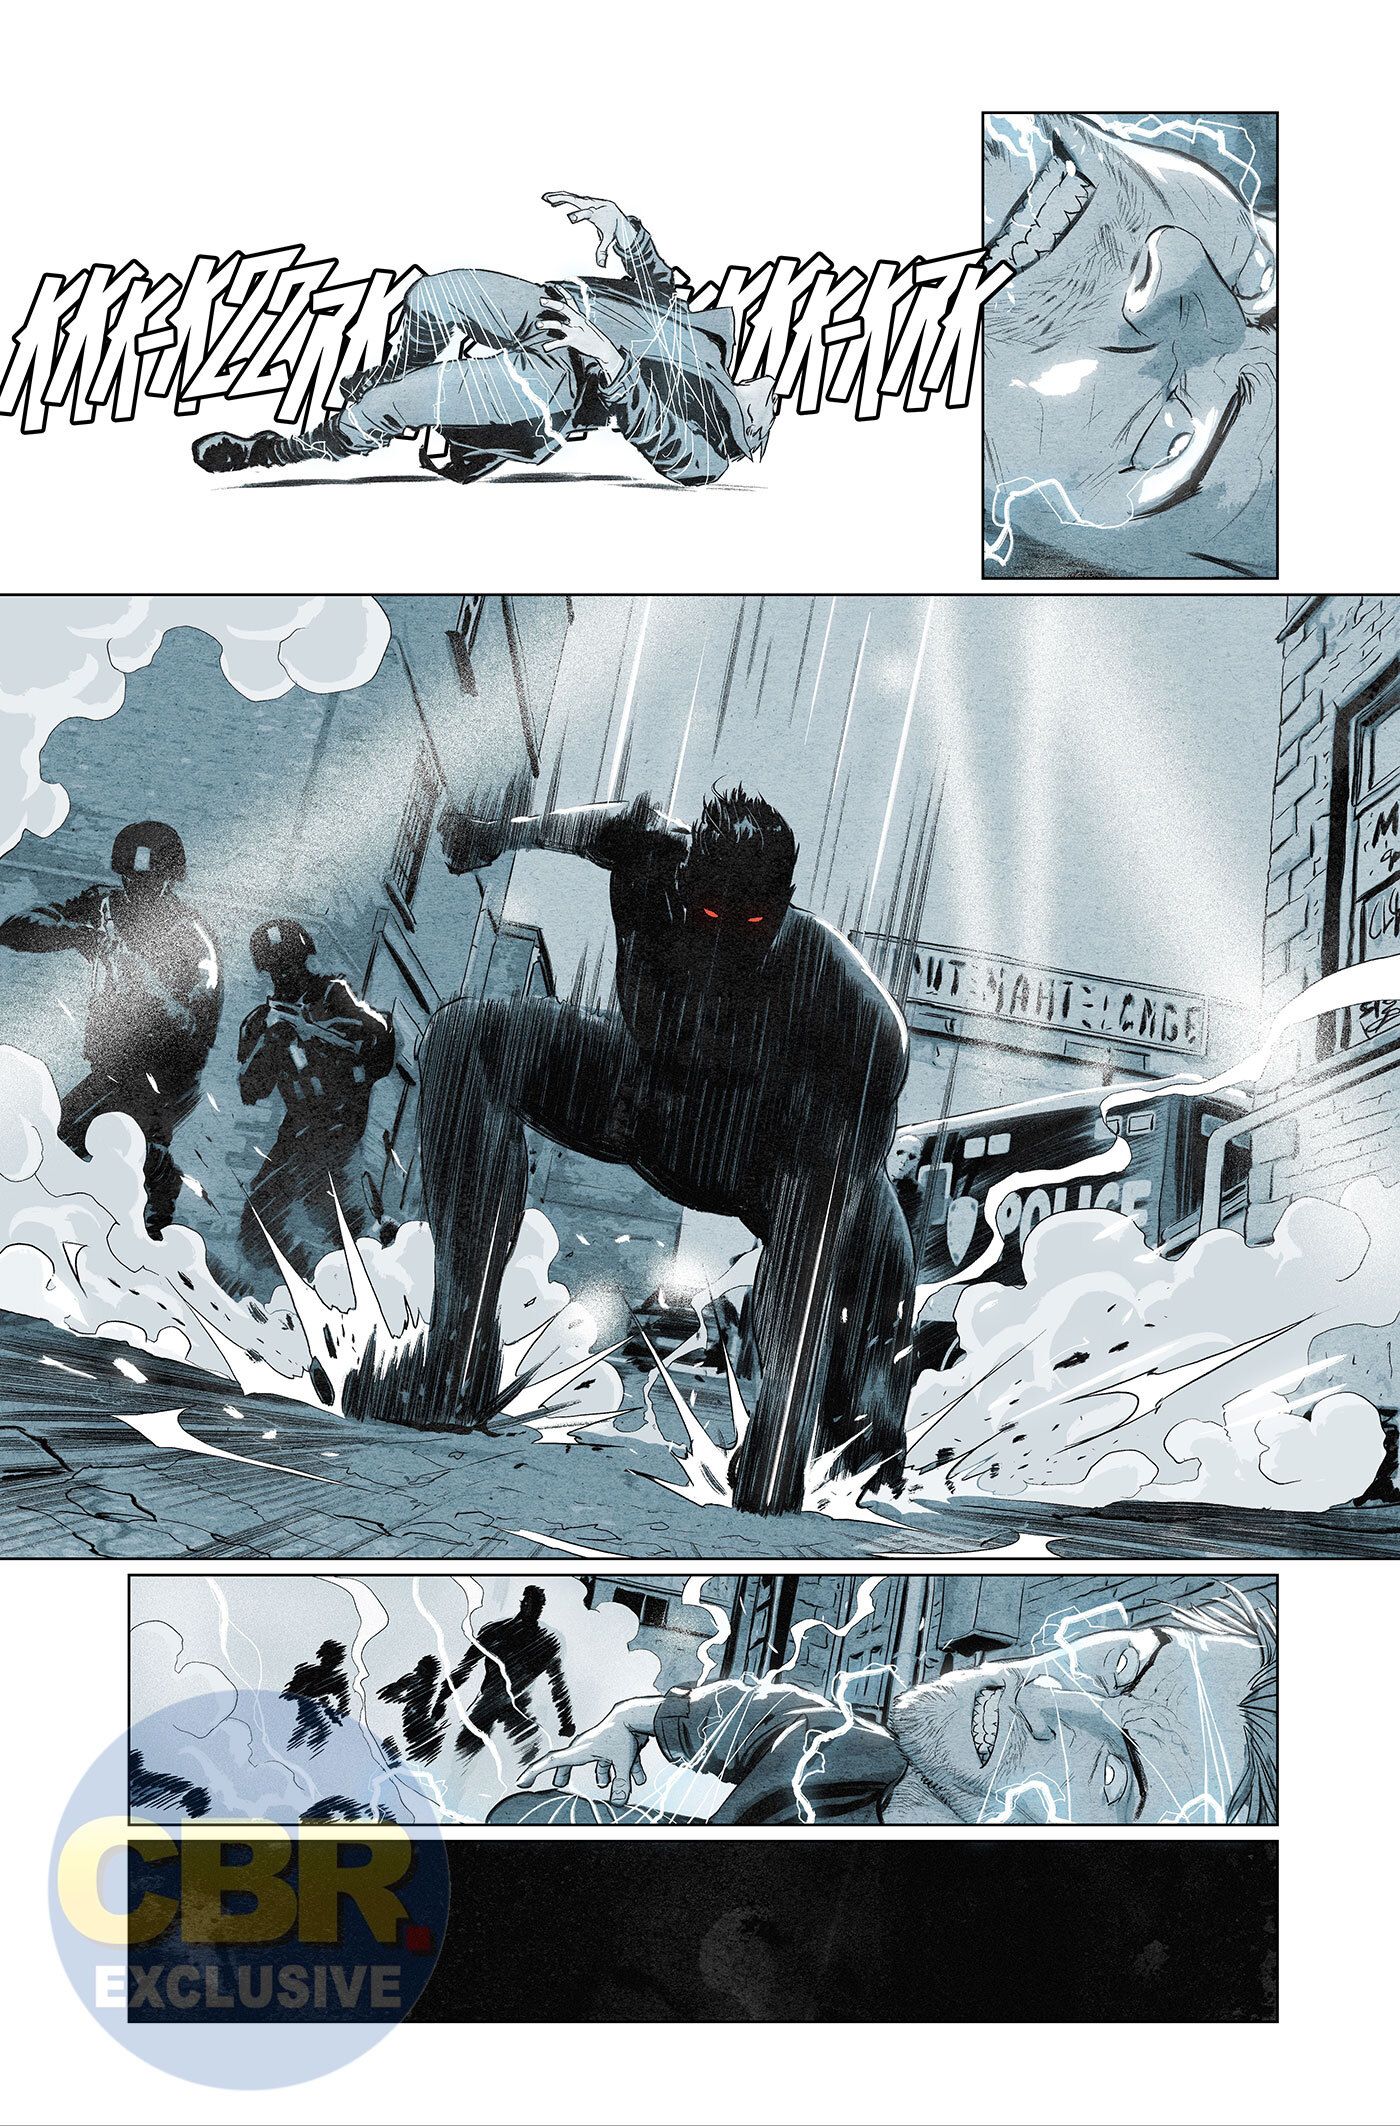 Superman and the Authority: Grant Morrison provoca um super-herói grisalho 4